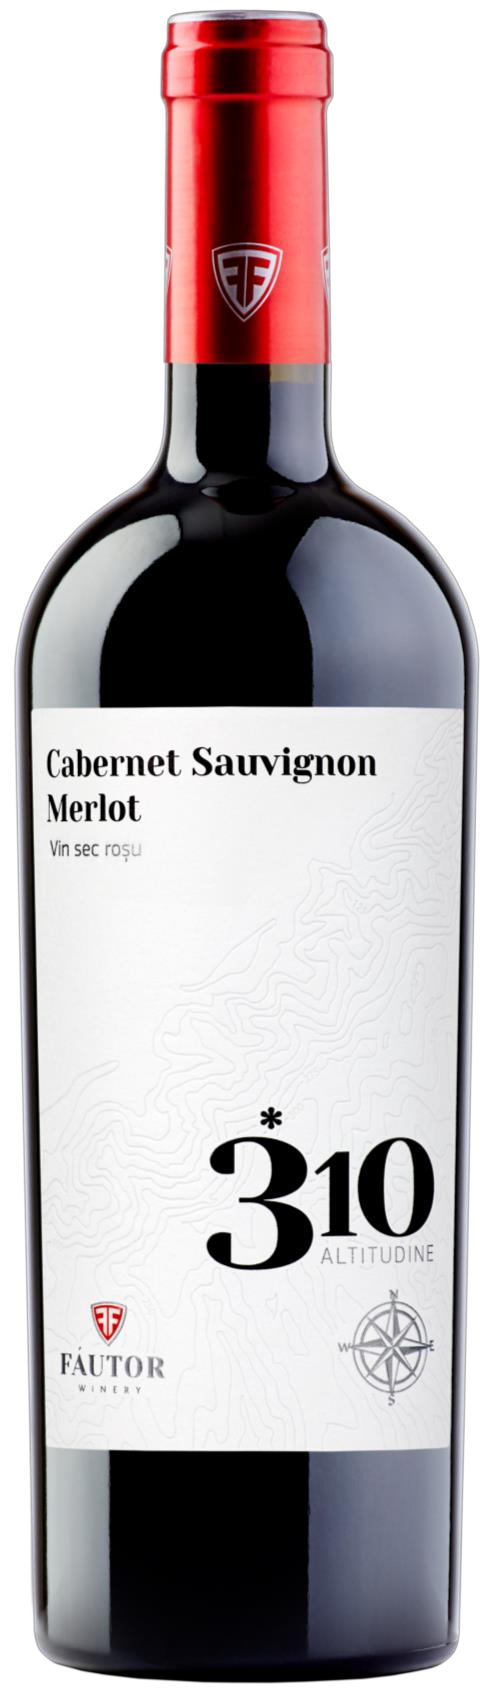 Fautor 310 ALTITUDINE Cabernet Sauvignon-Merlot, Red dry wine 0.75l foto trumbs 1